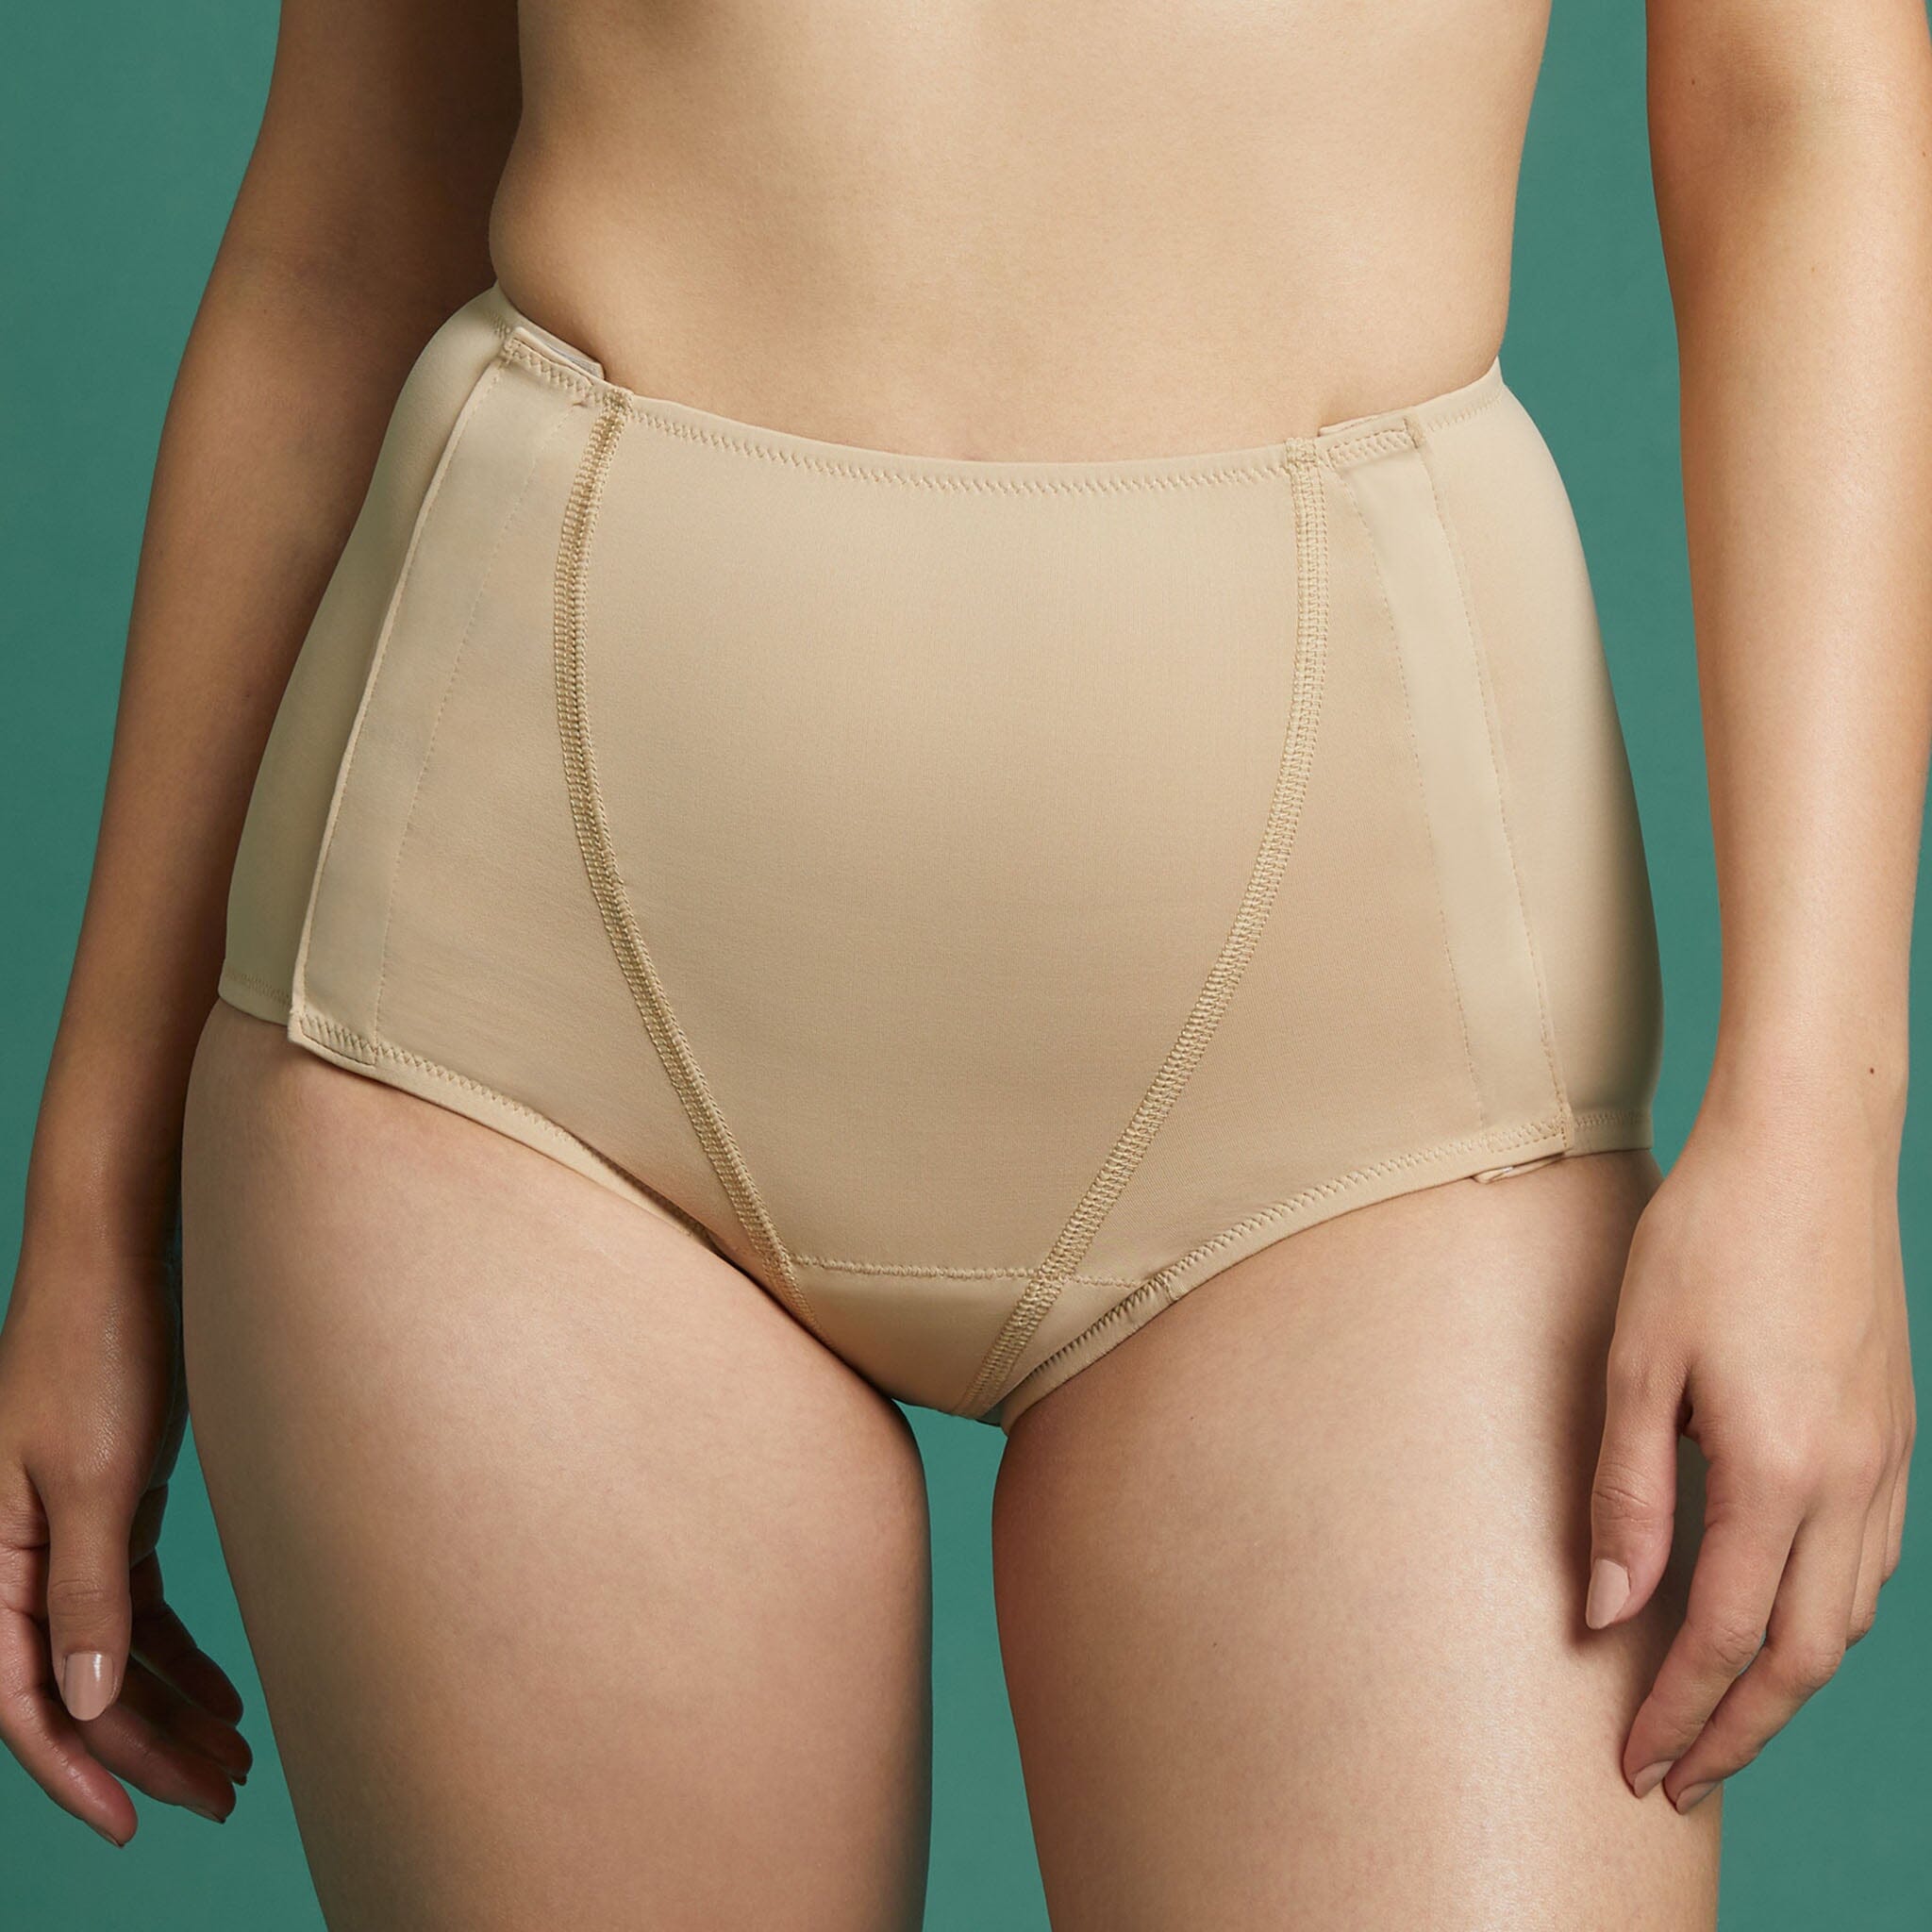 Slick Chicks™ Leakproof Underwear